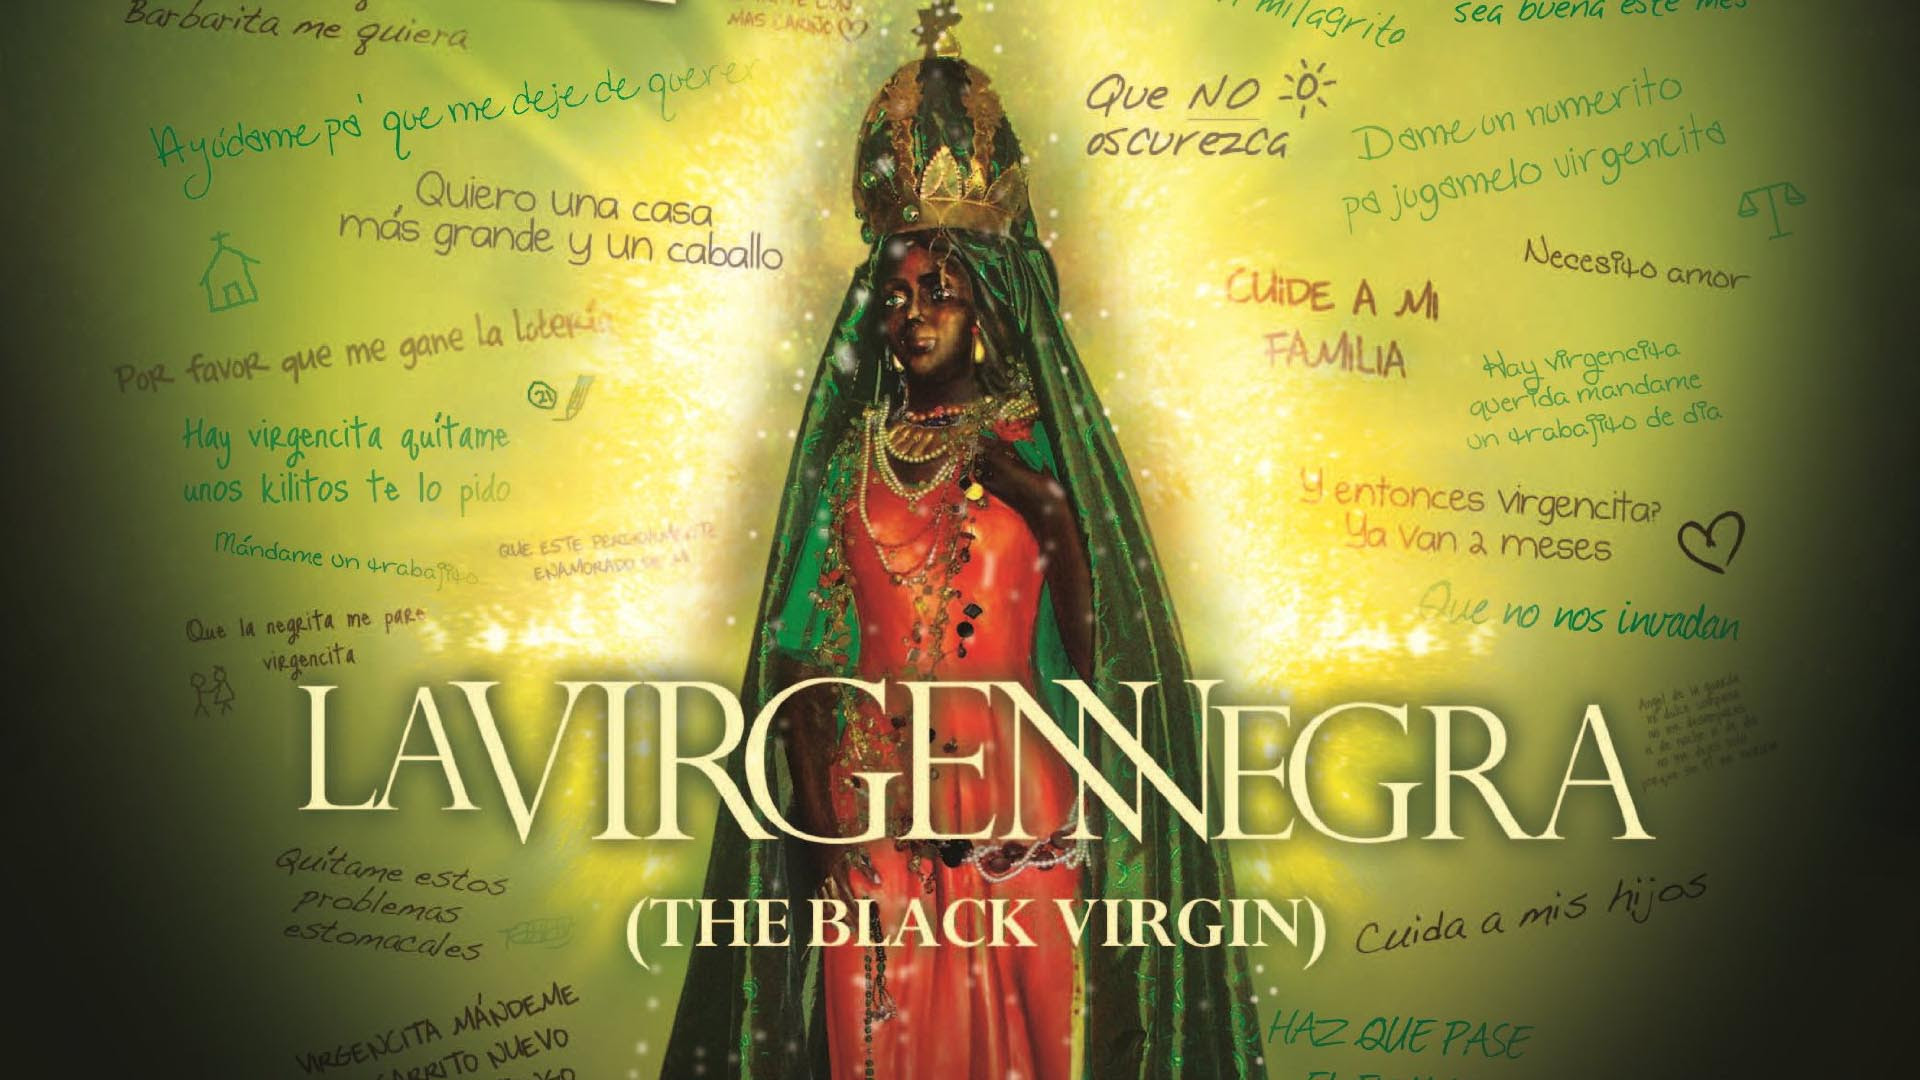 NP AGO 29 2022 - Patricia Aloy - Virgen Negra Película Venezolana (13)